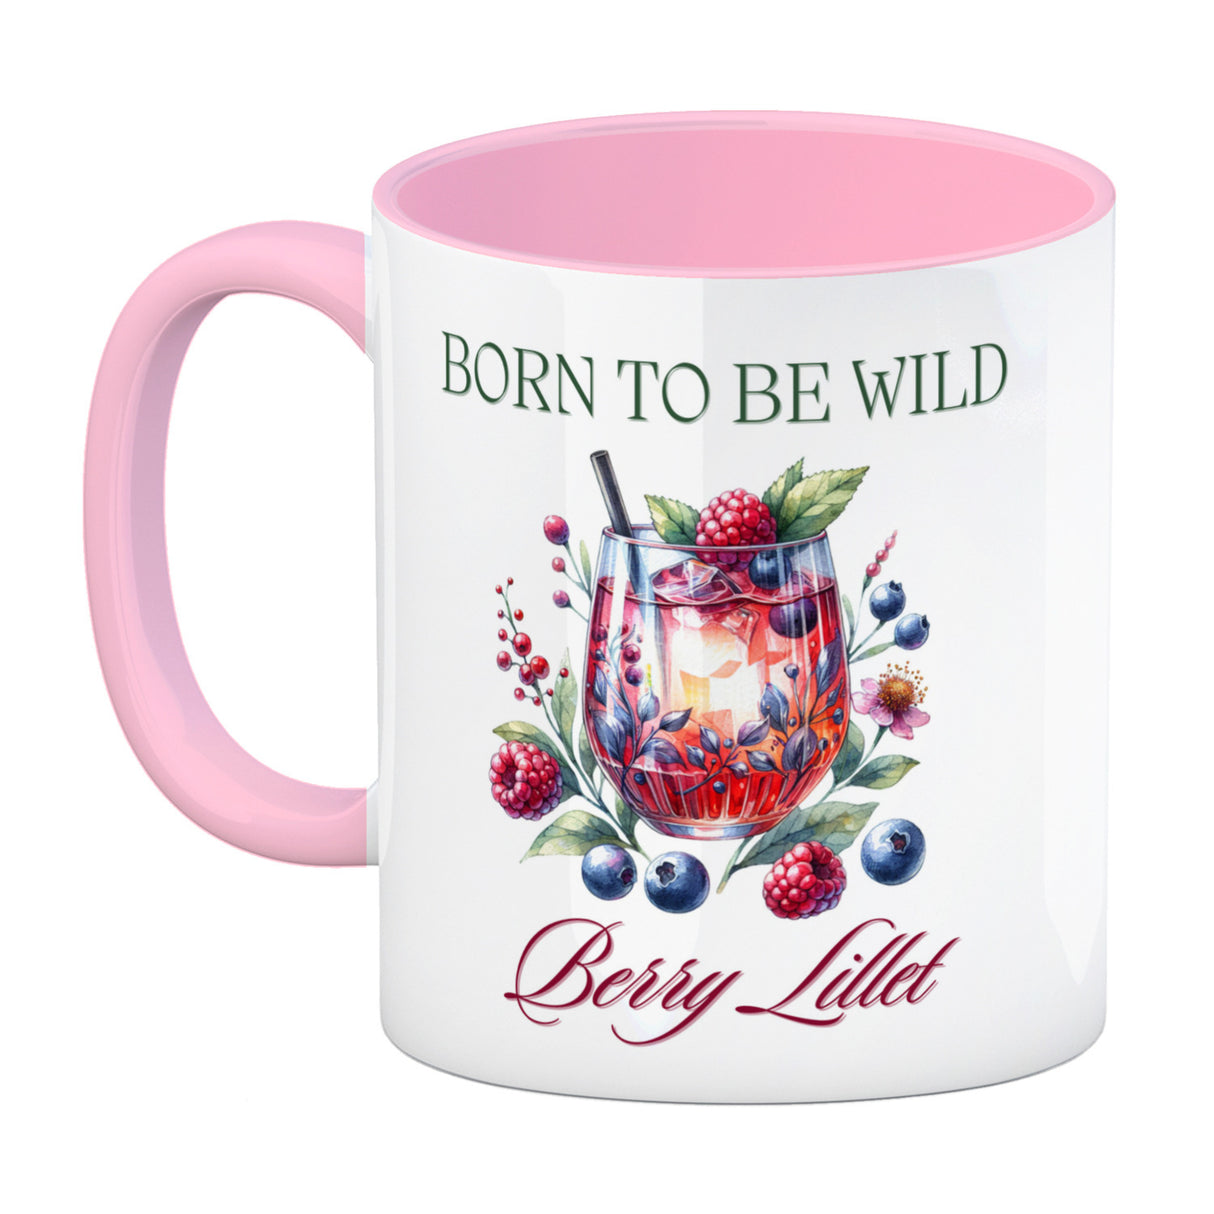 Wild Berry Lillet Kaffeebecher mit Spruch Born to be wild Berry Lillet